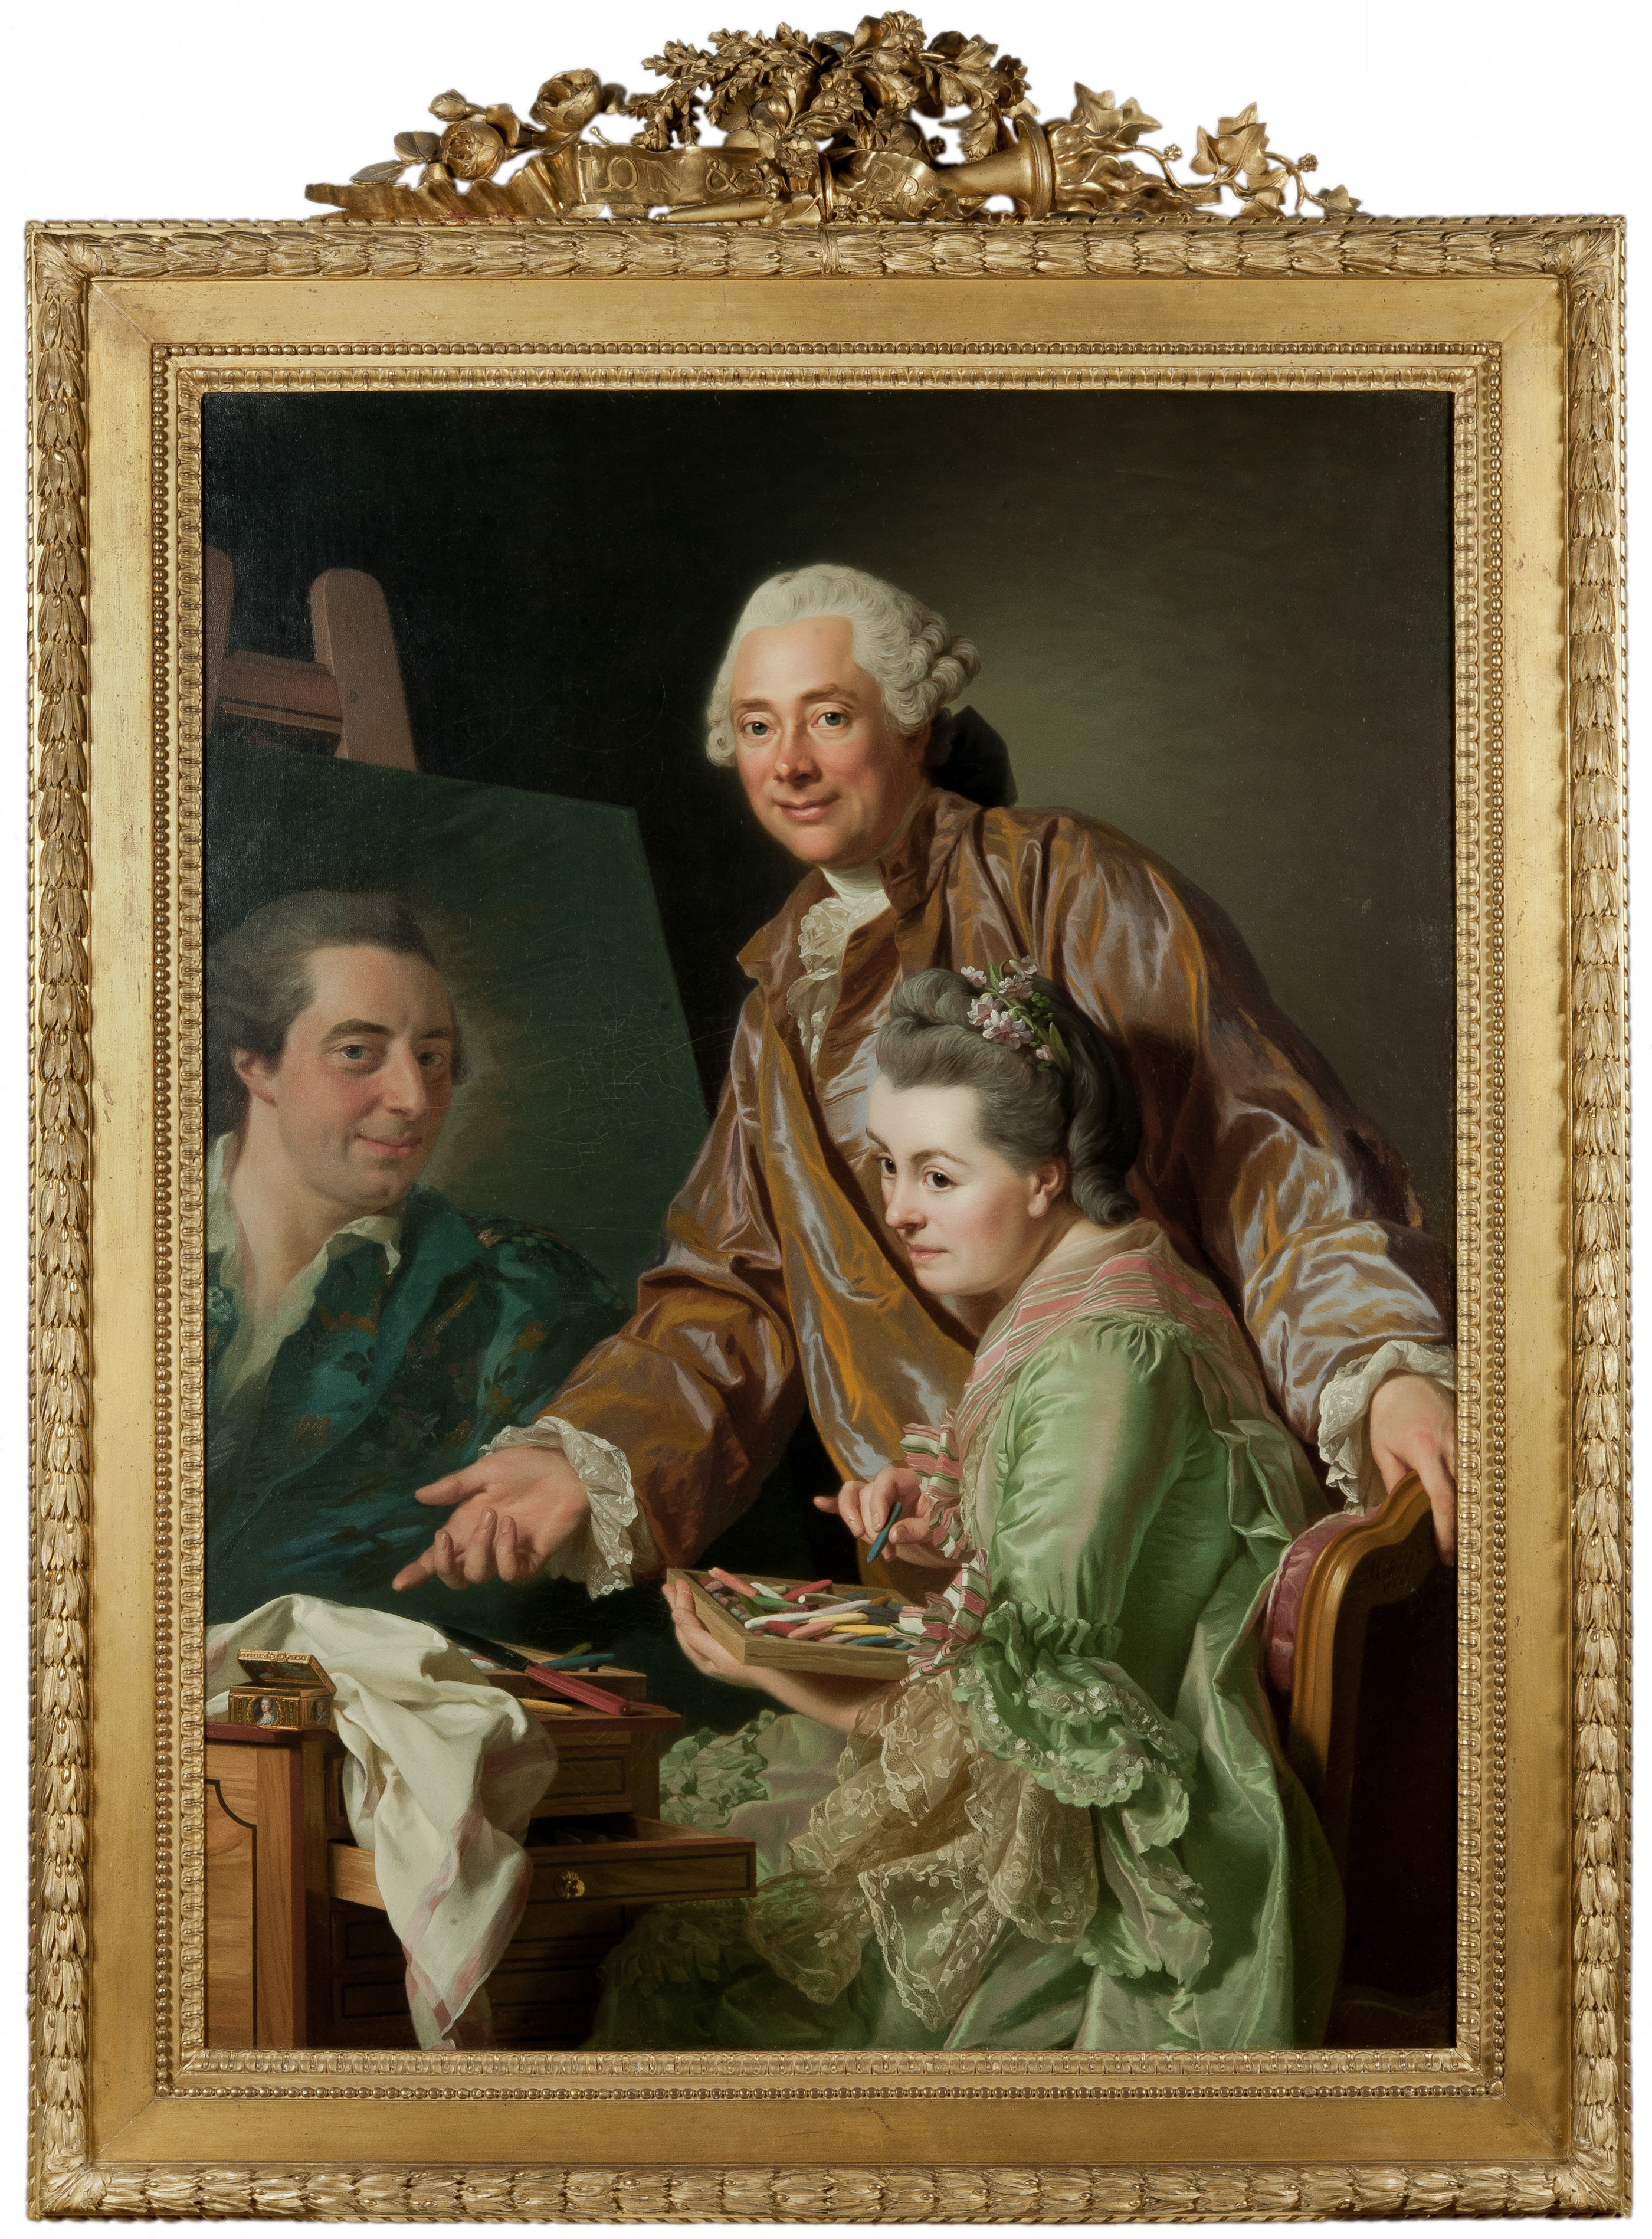 画家と、ペイルを描くその妻 by Alexander Roslin - 1767年 - 131 x 98,5 cm 